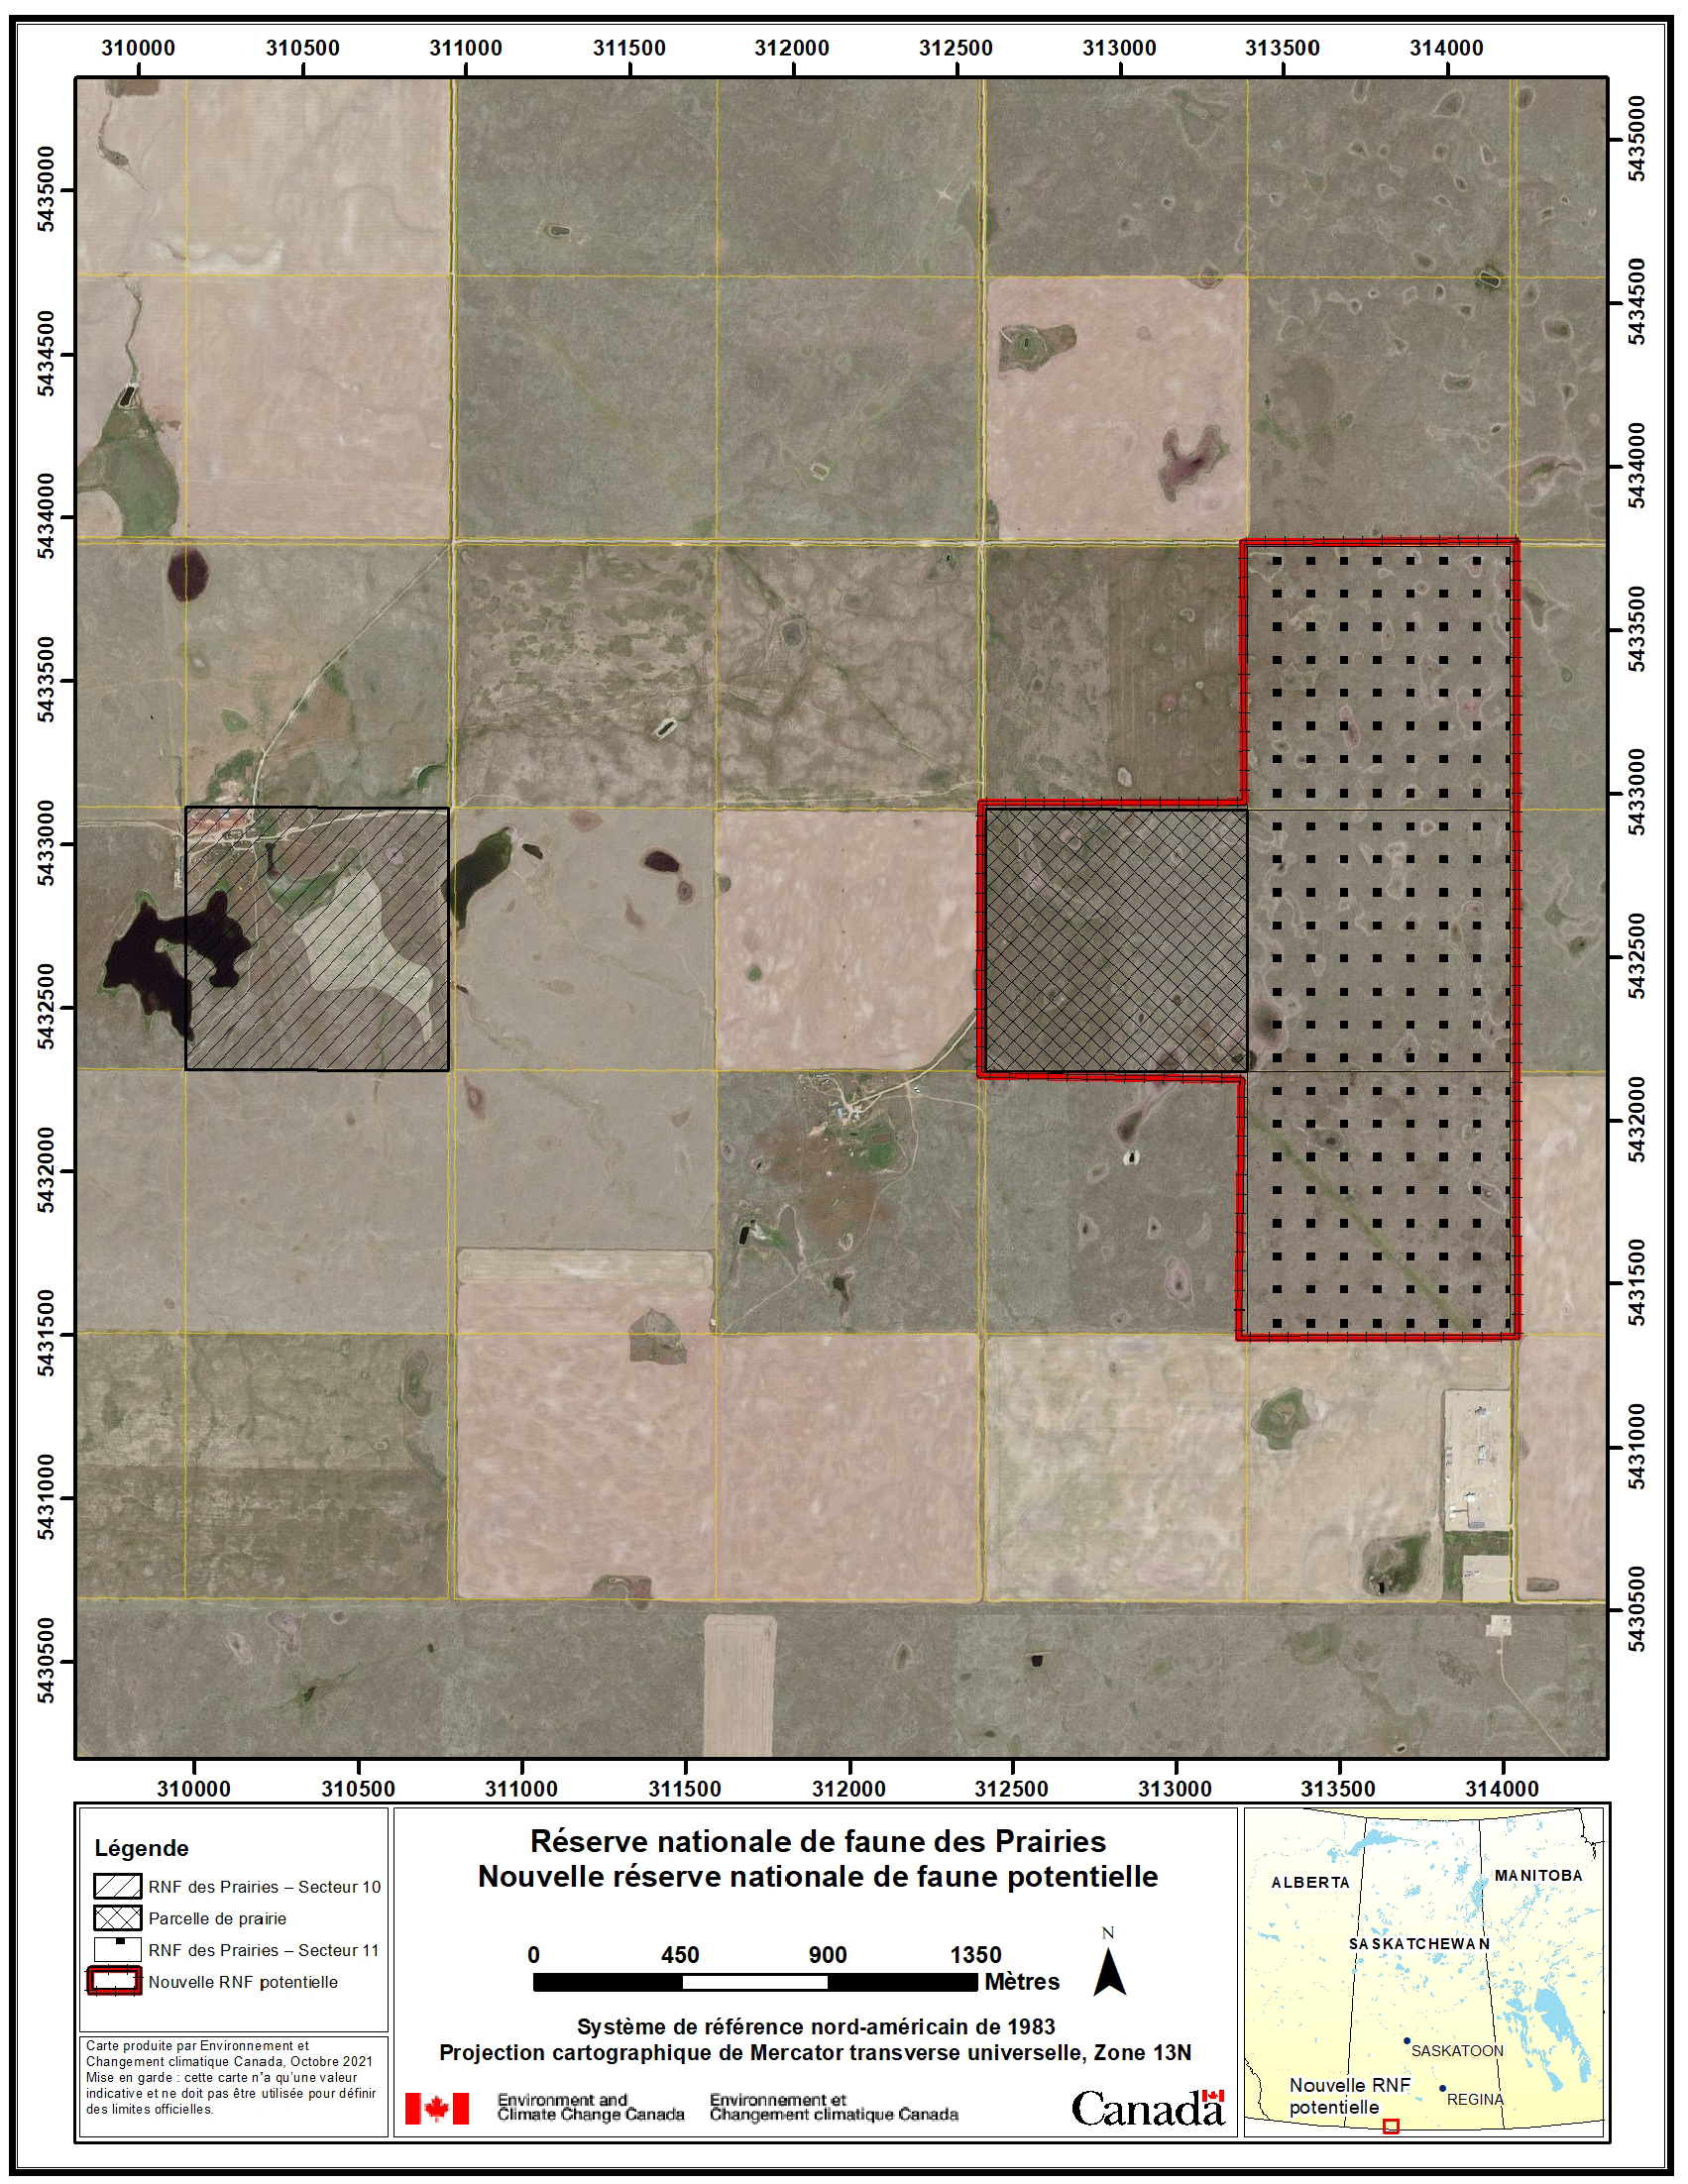 Figure 2. Photographie aérienne montrant les emplacements et les zones des secteurs 10 et 11 de la réserve nationale de faune des Prairies et de la nouvelle réserve nationale de faune potentielle – Version textuelle en dessous de l'image